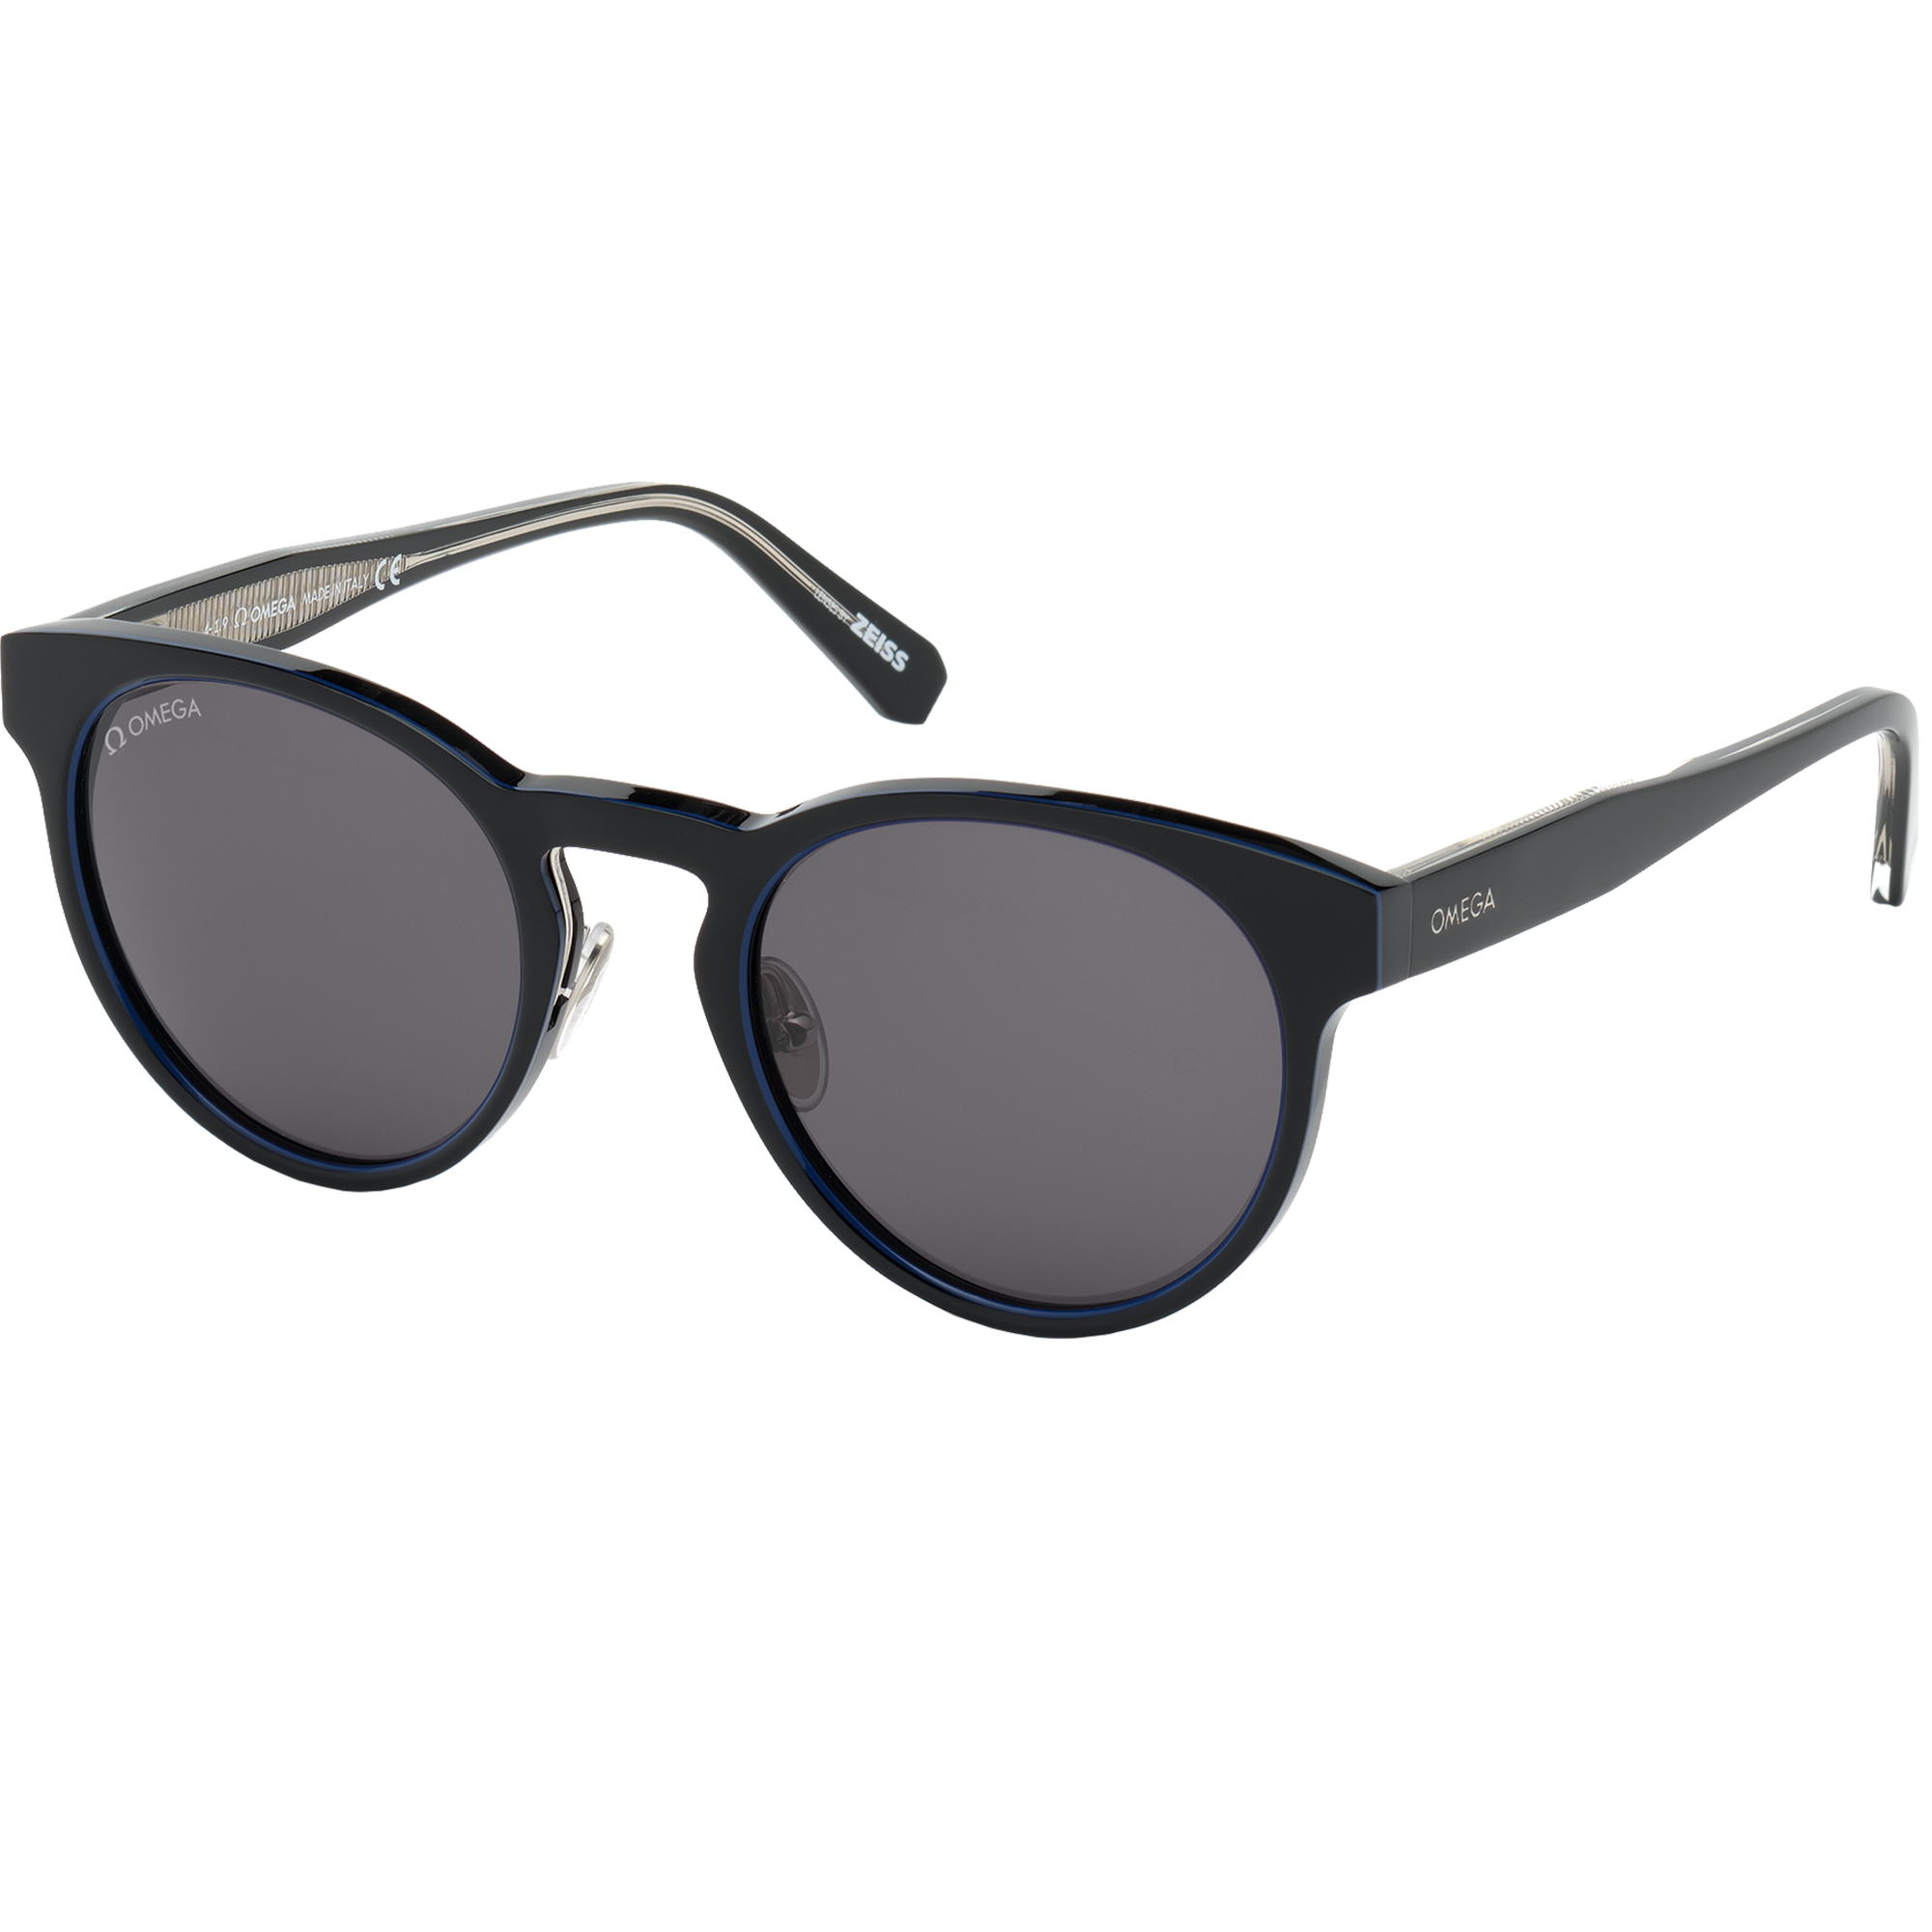 Солнцезащитные очки - Круглая форма, ОЧКИ ДЛЯ МУЖЧИН И ЖЕНЩИН - OM0020-H5201A